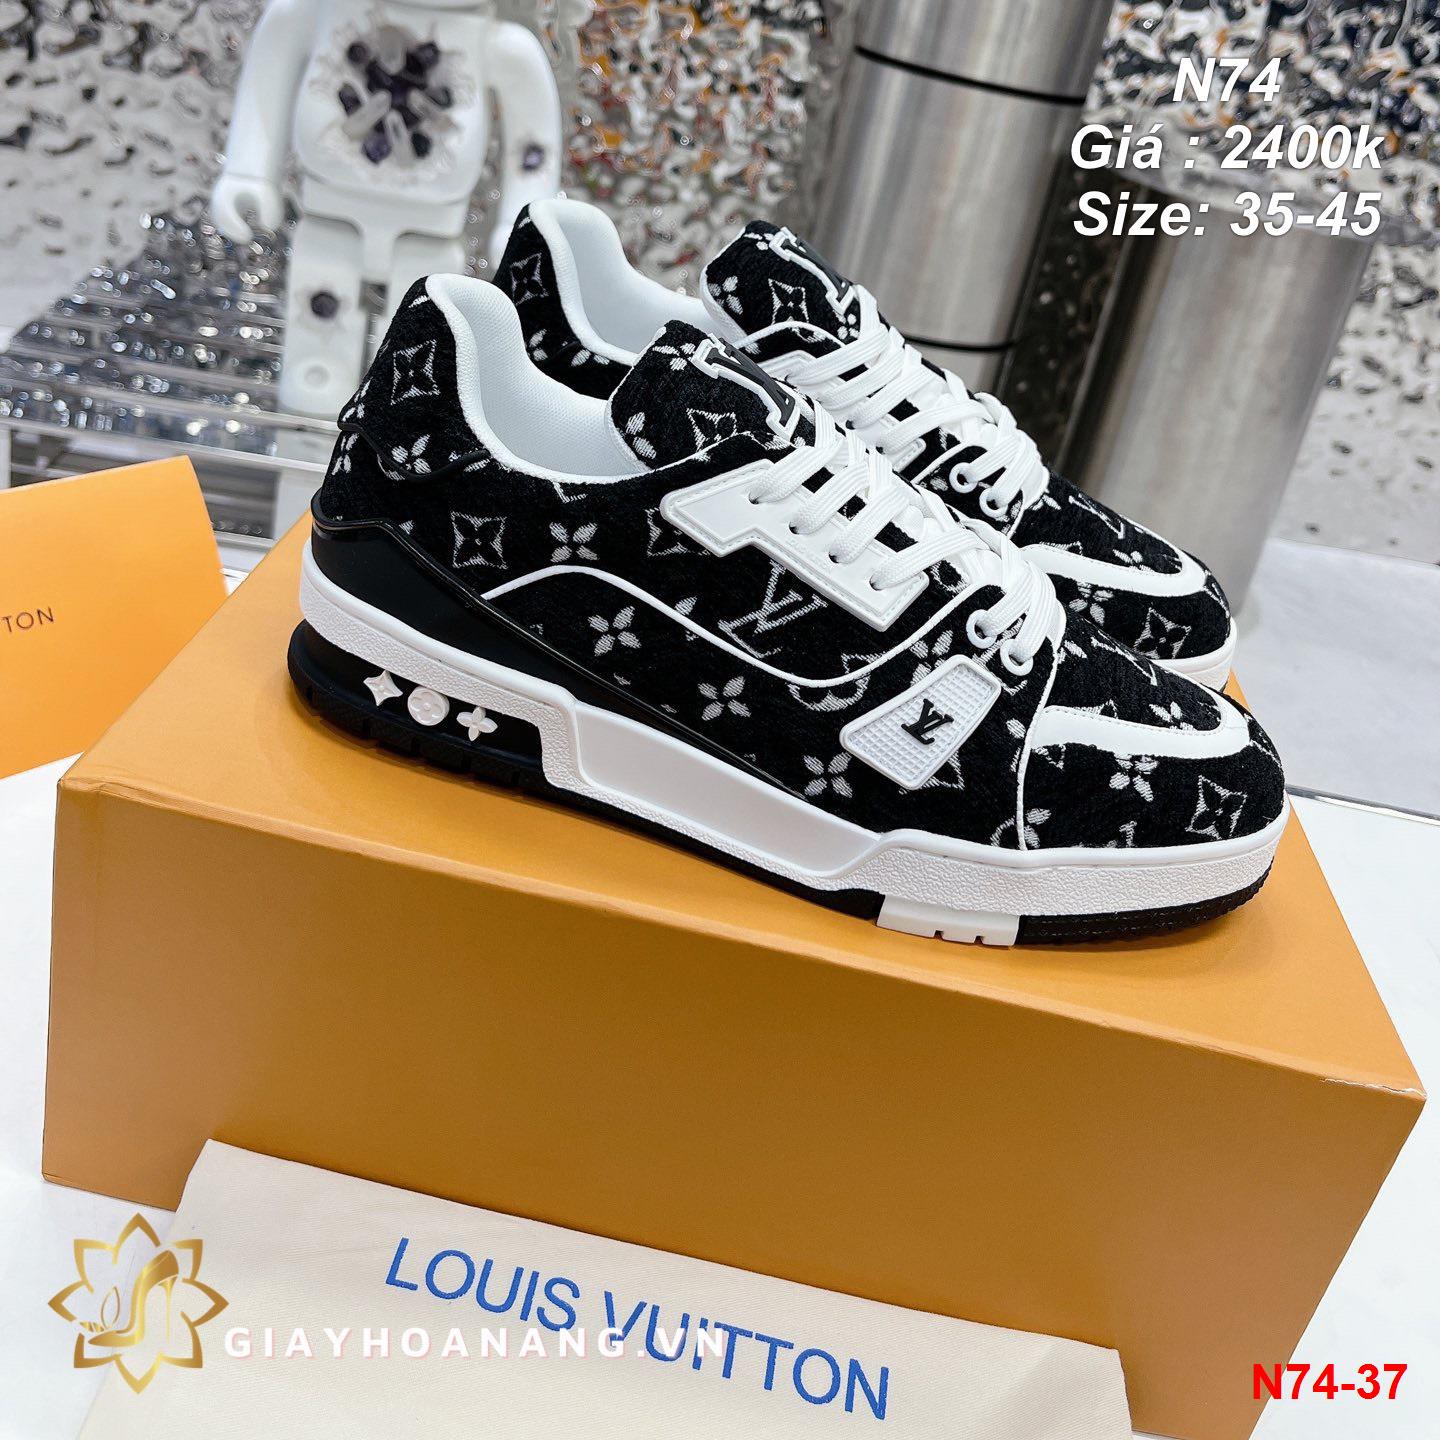 N74-37 Louis Vuitton giày thể thao siêu cấp